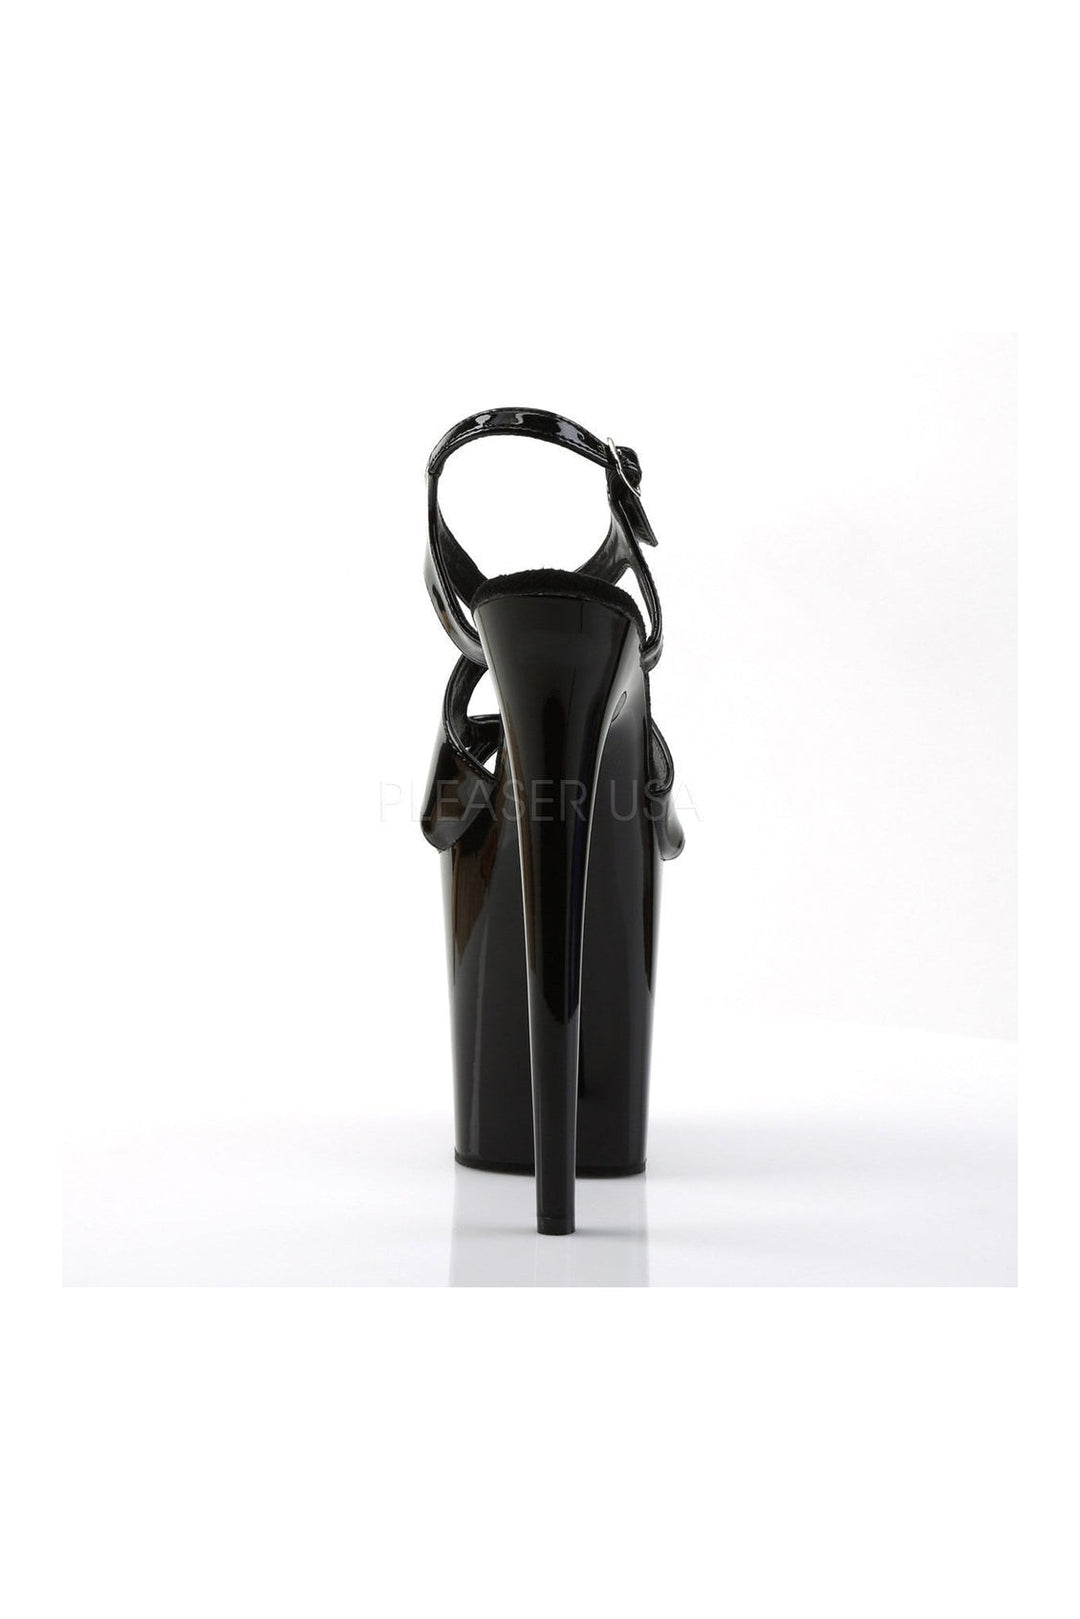 FLAMINGO-831 Platform Sandal | Black Patent-Pleaser-Sandals-SEXYSHOES.COM